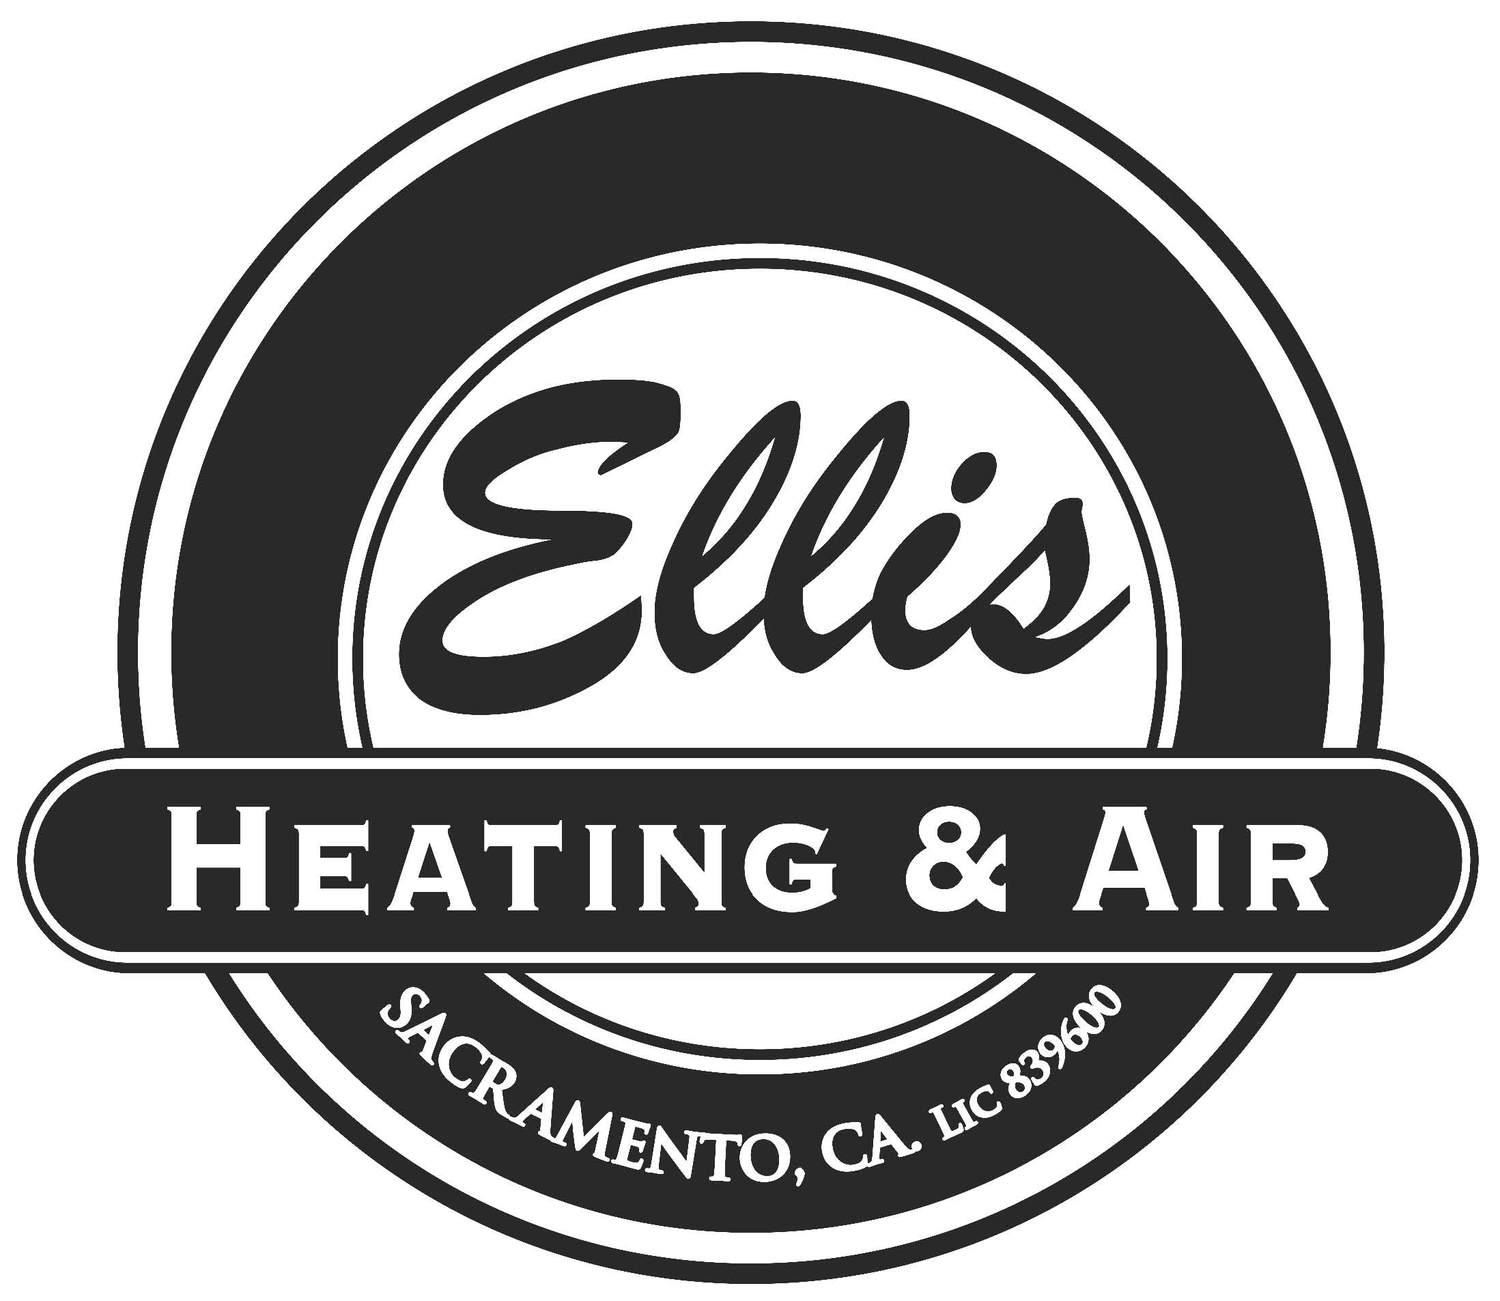 Ellis Heating & Air